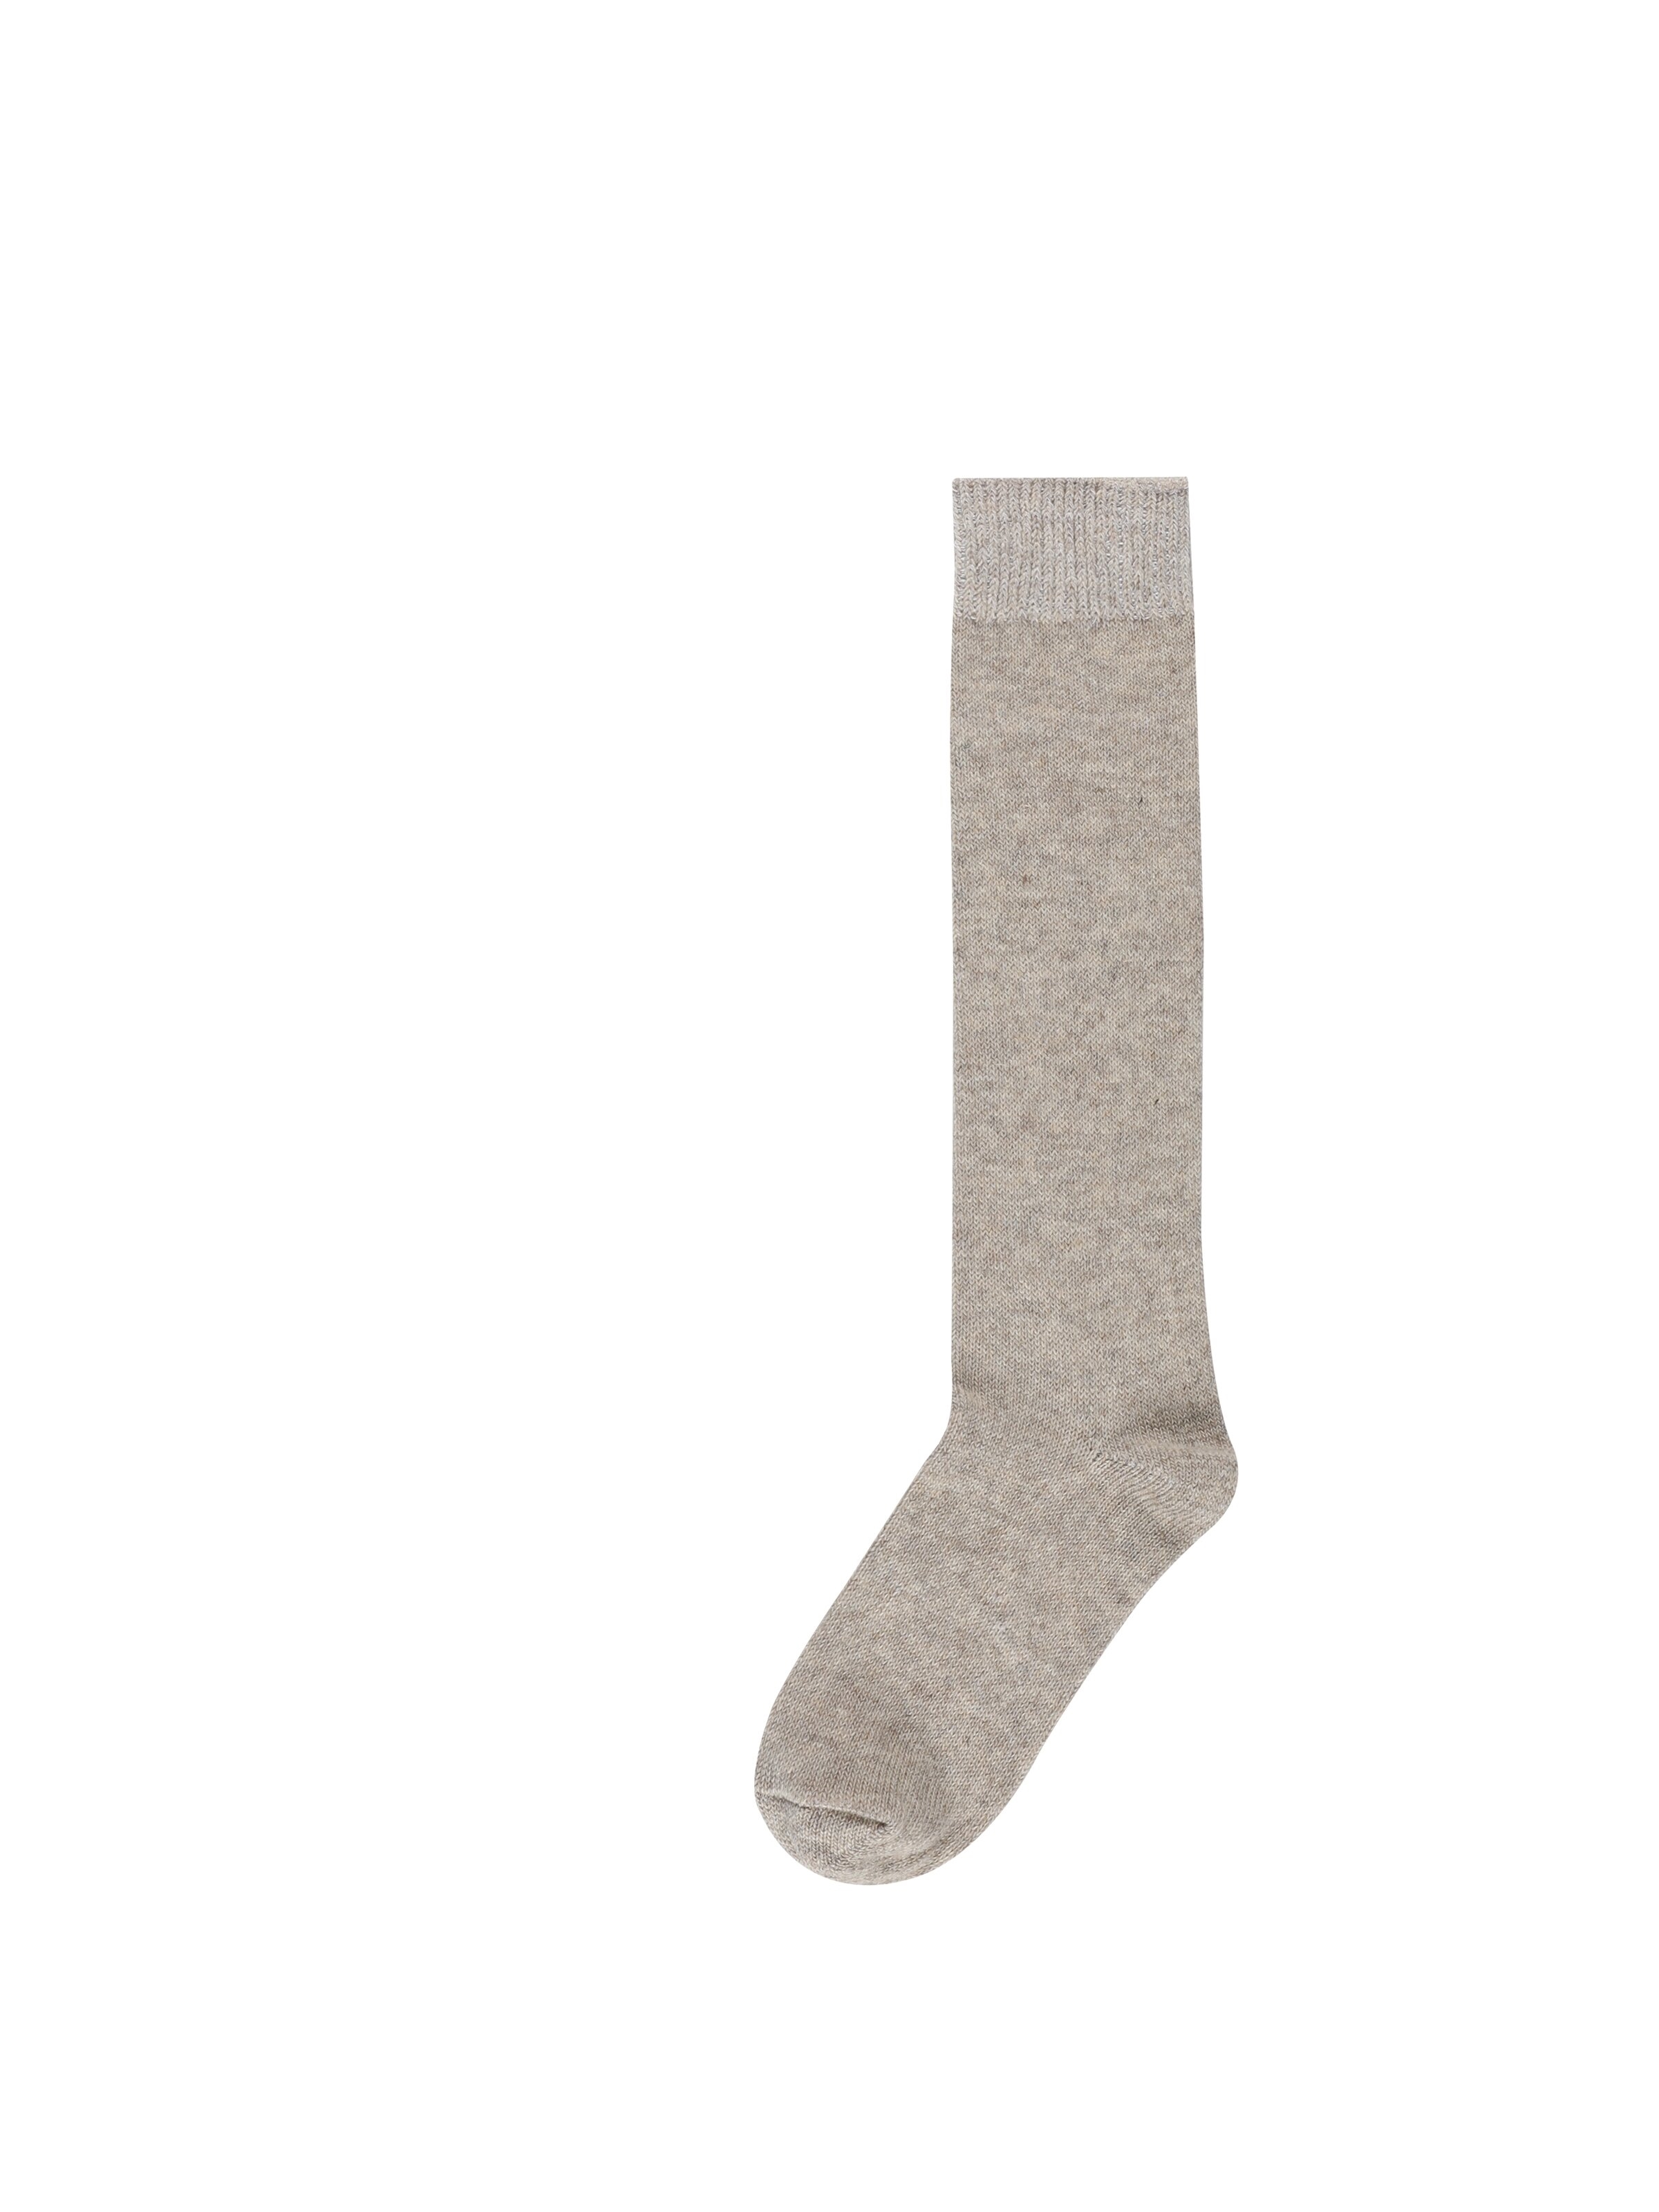 Показати інформацію про Шкарпетки Жіночі Бежеві Cl1051772